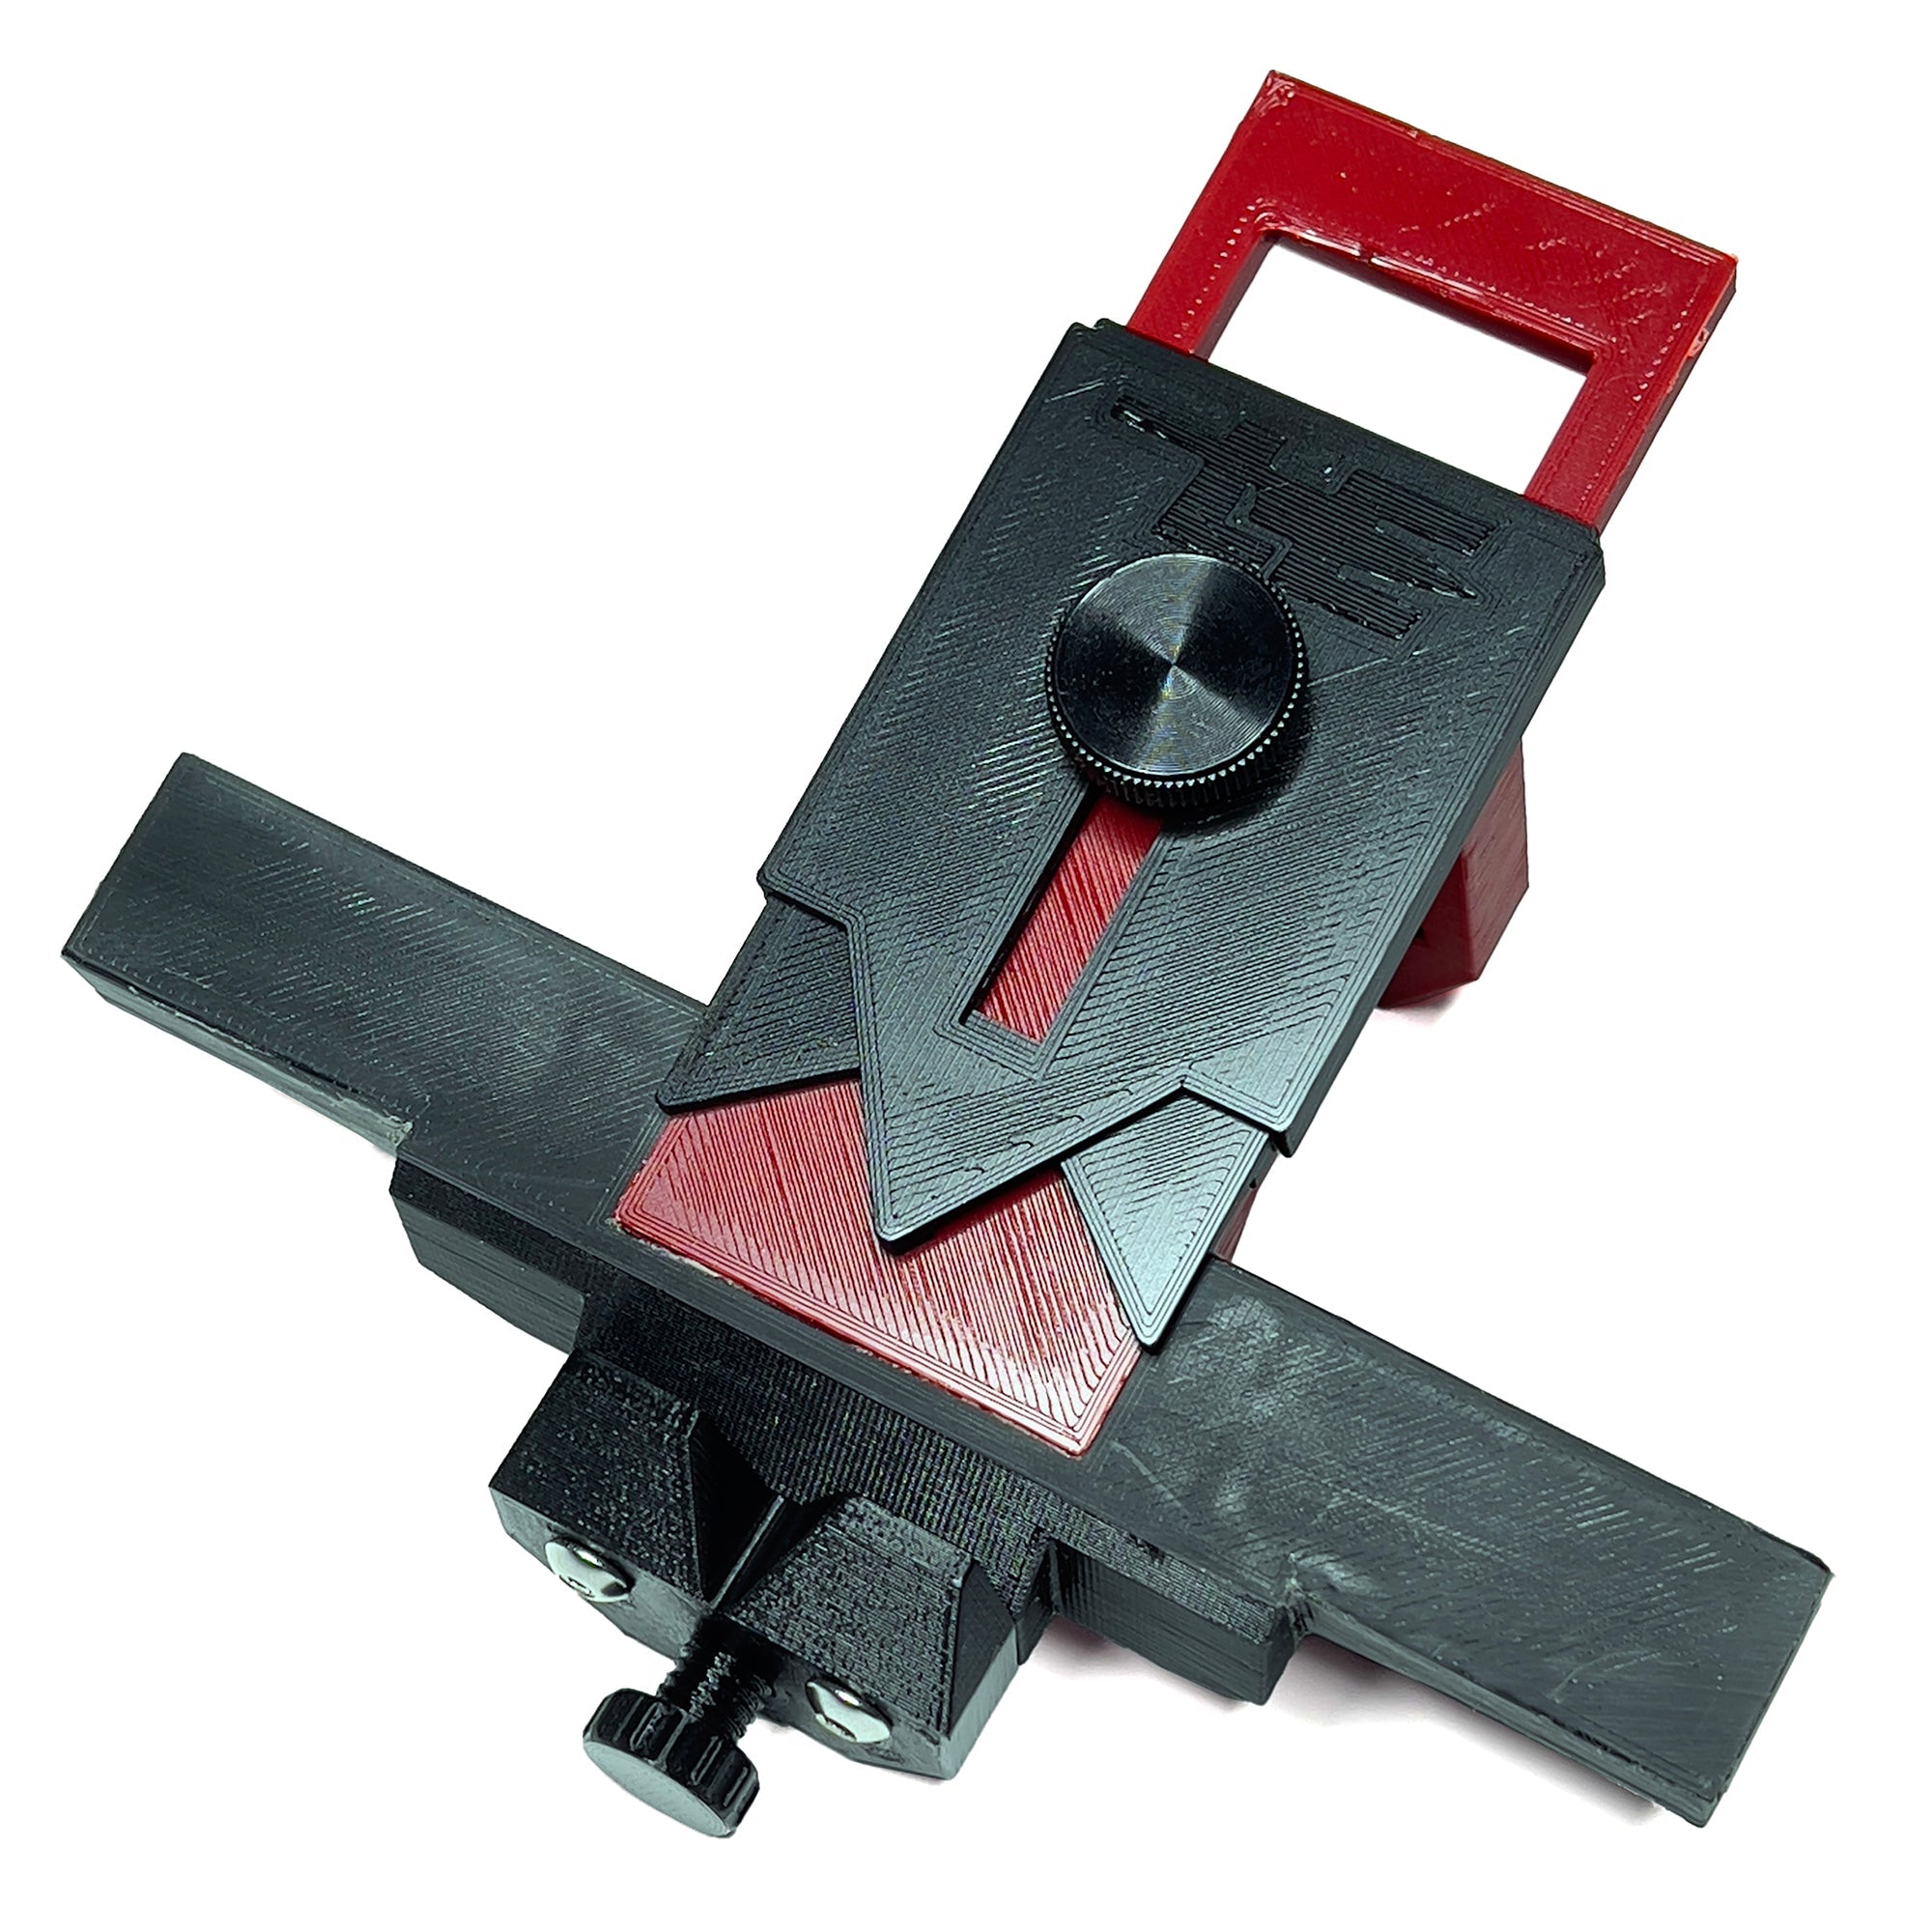 Work Sharp Precision Adjust Upgrade Kit - Grommet's Knife & Carry